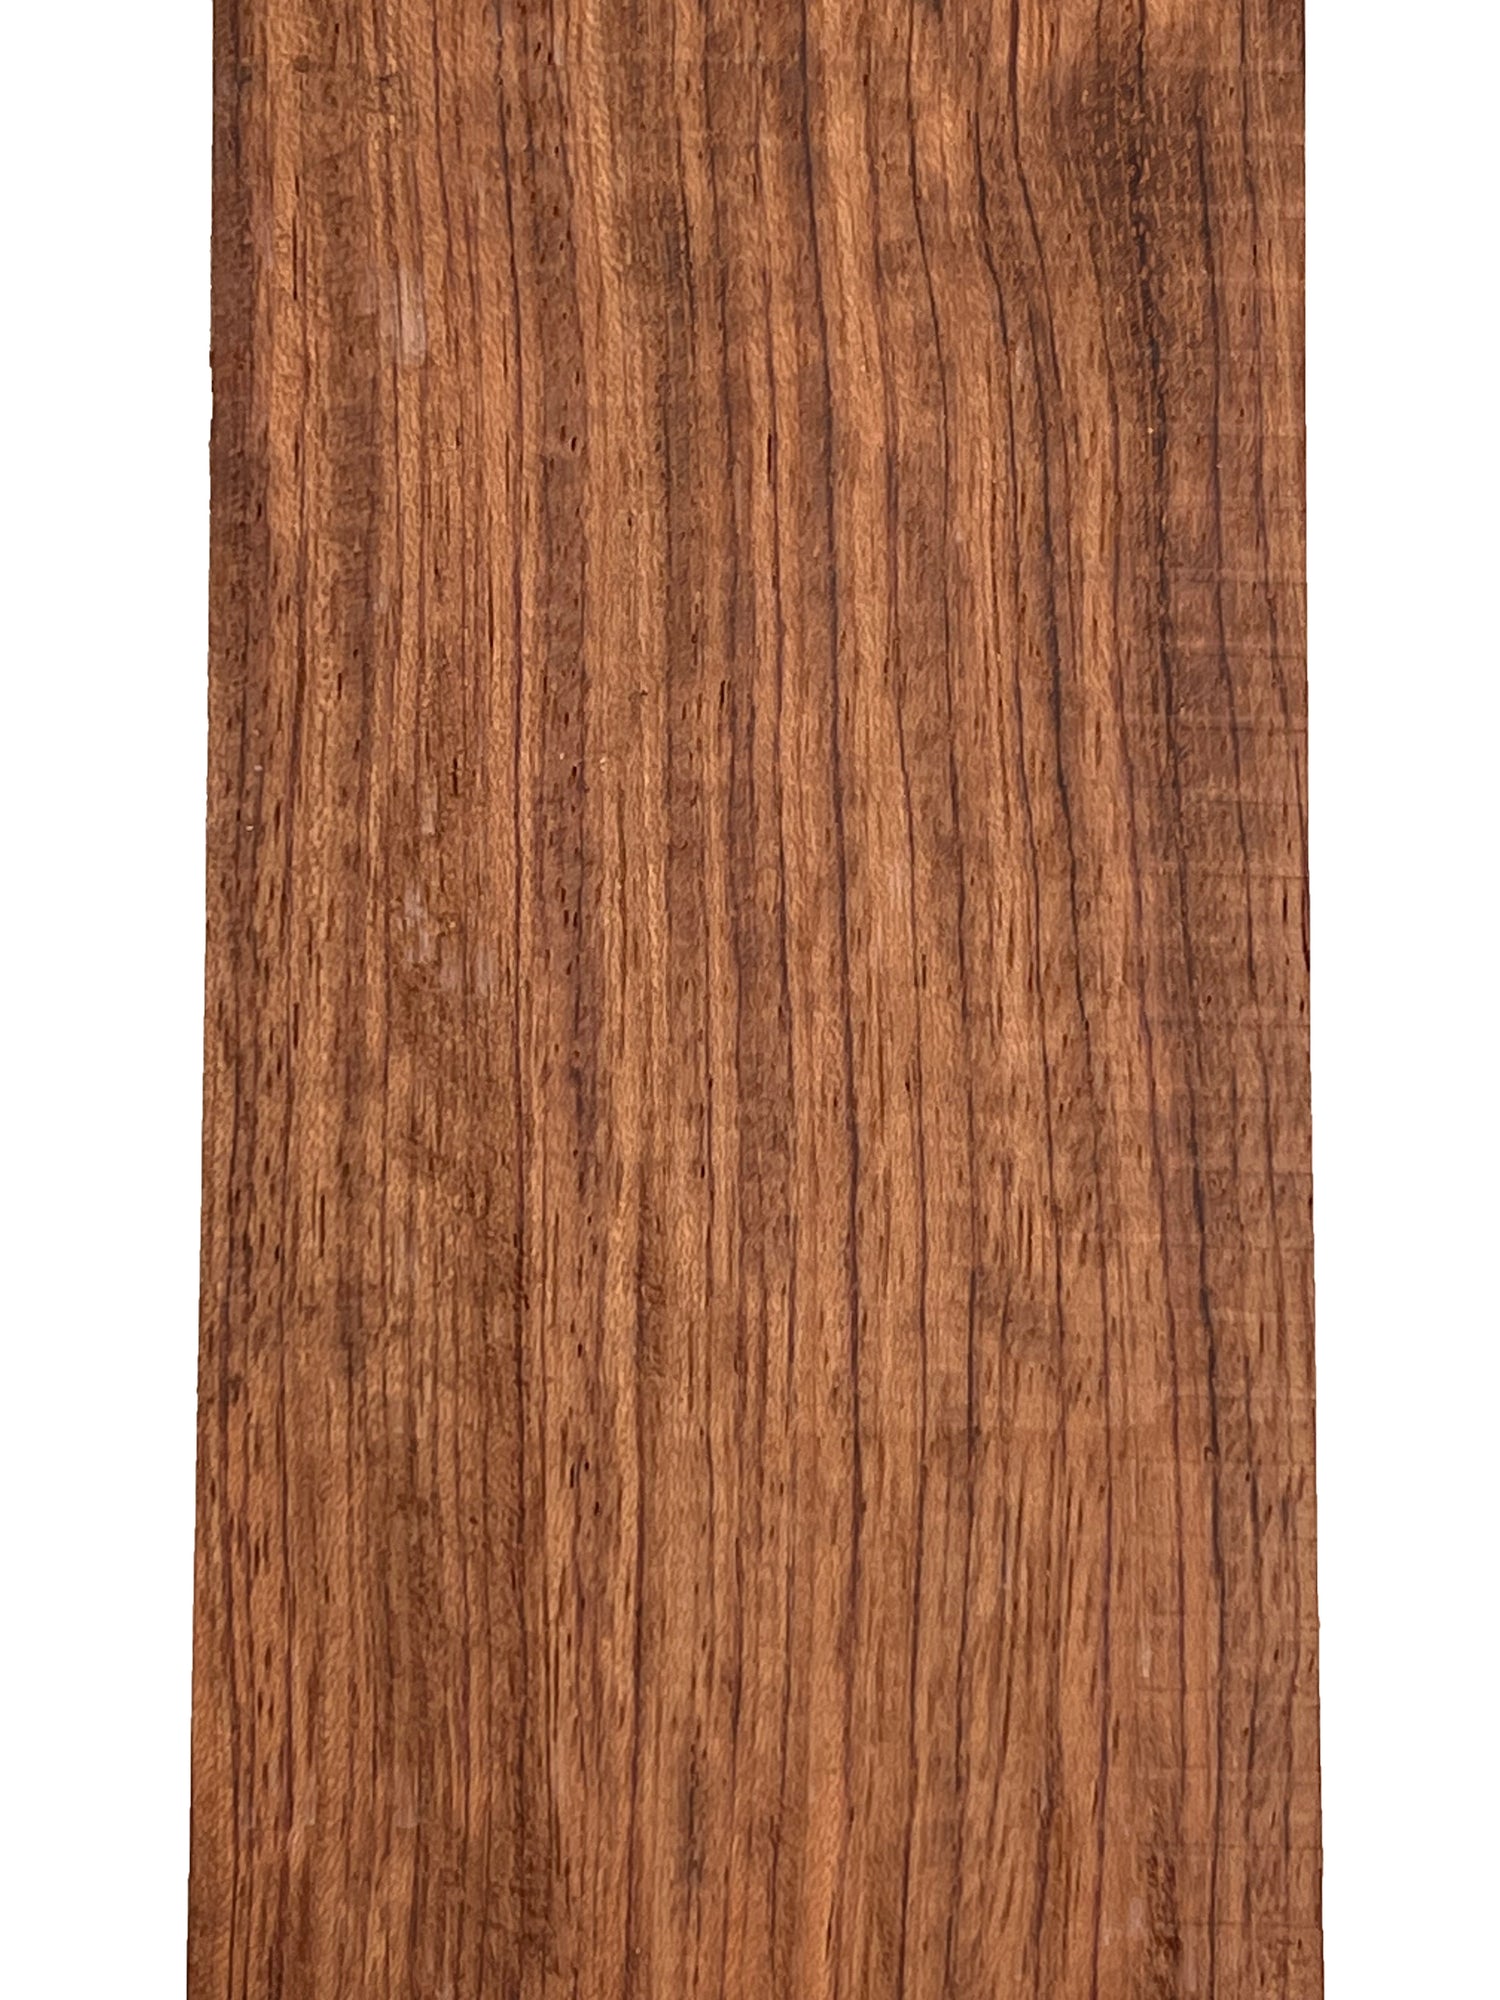 Bubinga Guitar Fingerboard Blanks - Exotic Wood Zone - Buy online Across USA 